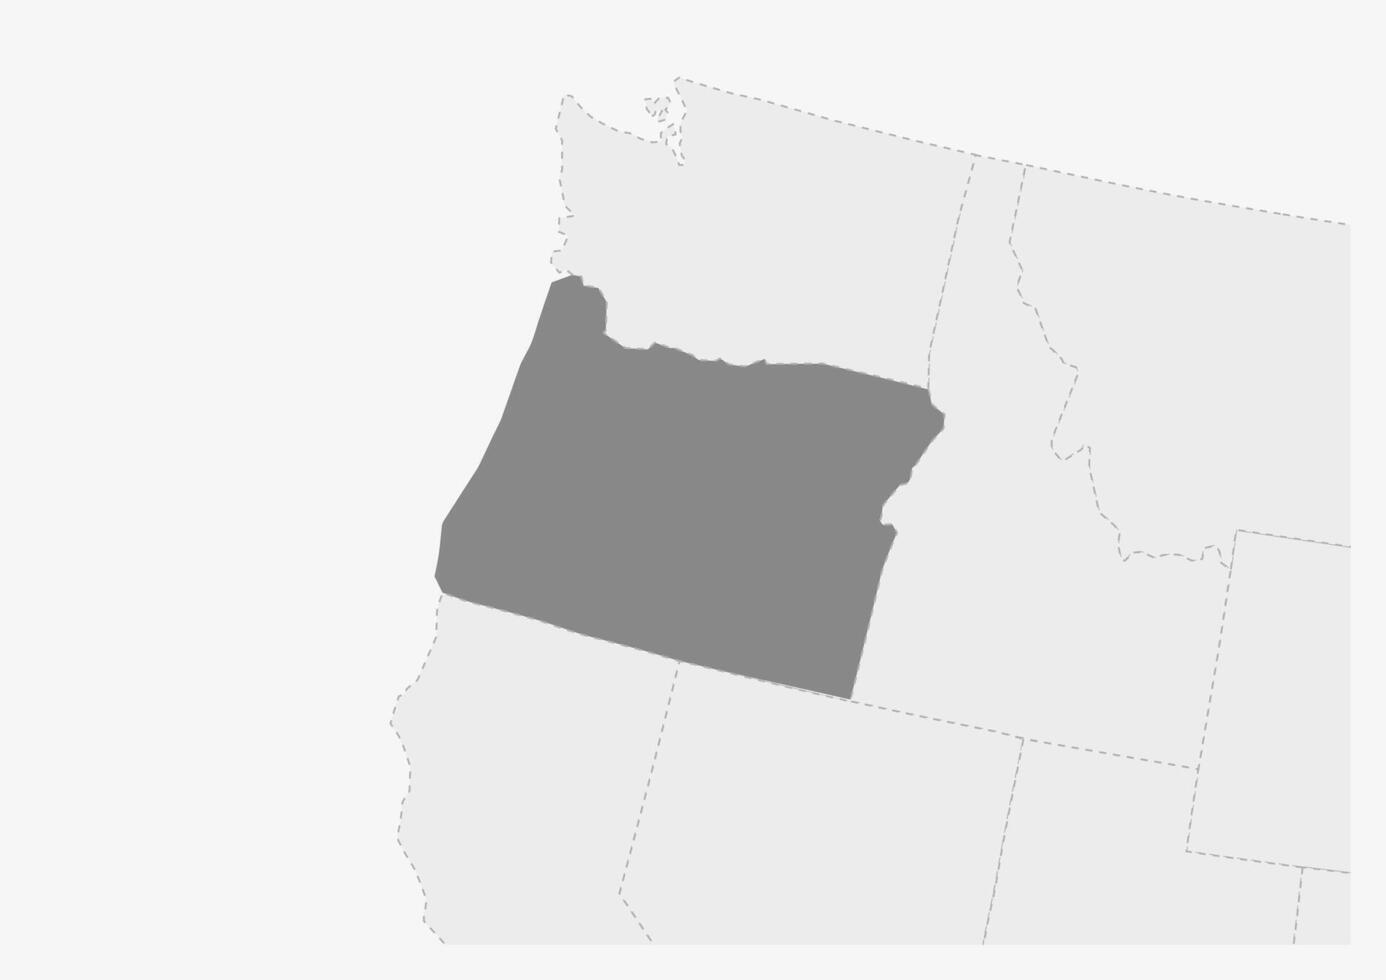 Karte von USA mit hervorgehoben Oregon Zustand Karte vektor